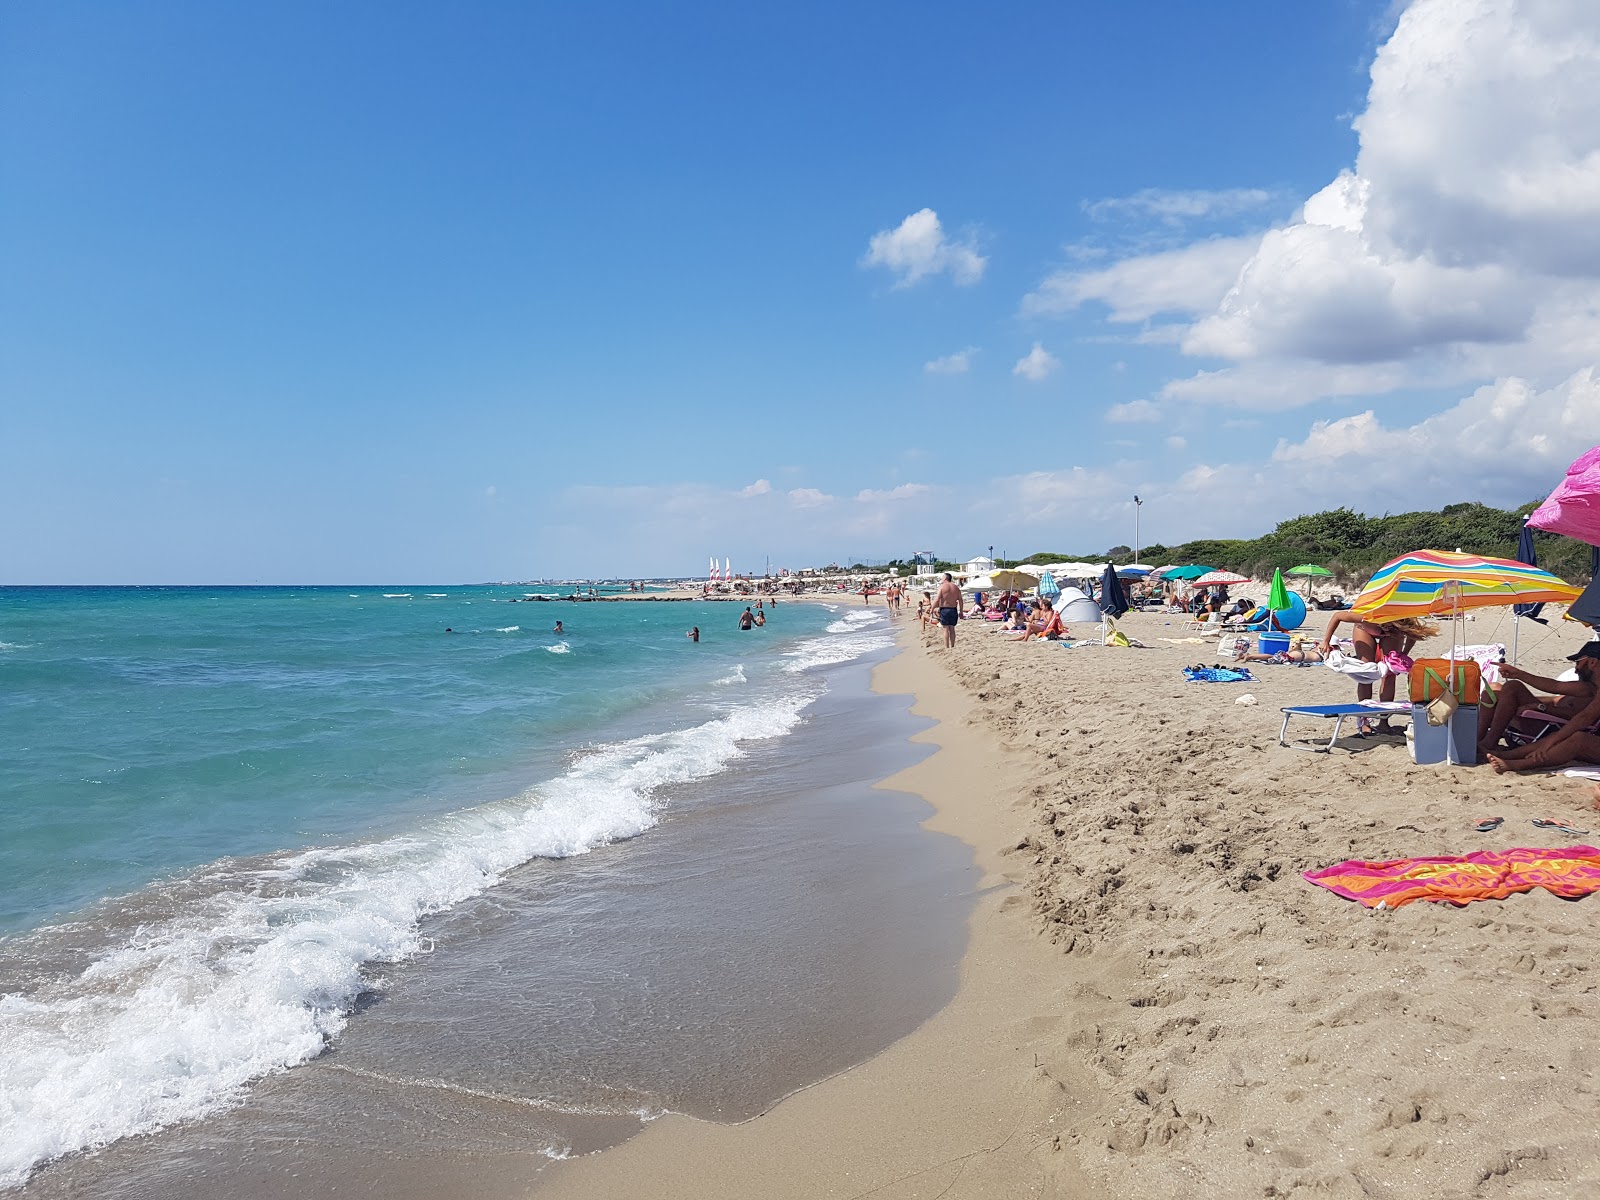 Spiaggia di Via G.Battista'in fotoğrafı parlak ince kum yüzey ile